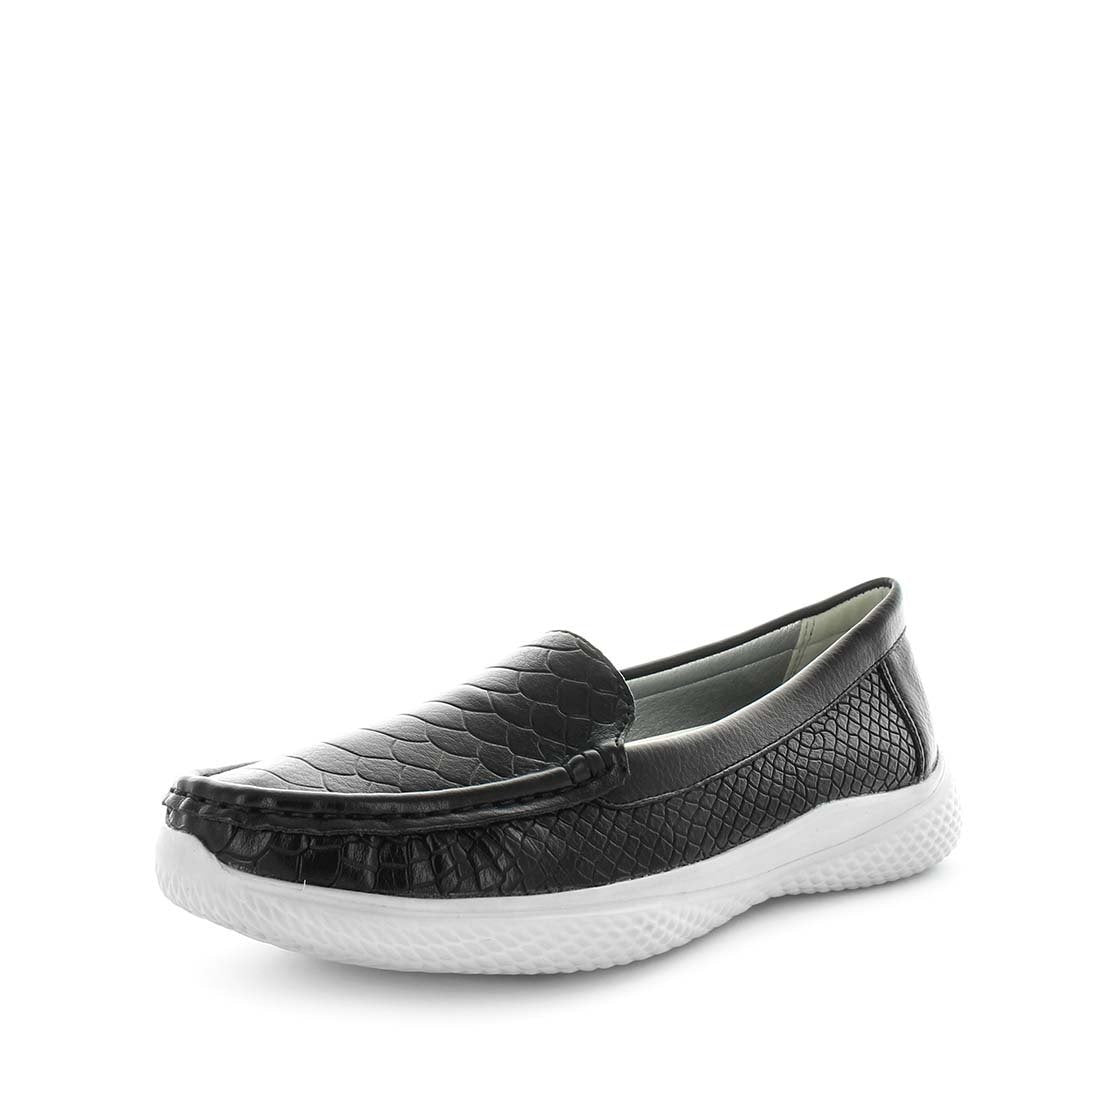 SHERMY by WILDE - iShoes - Sale, Women's Shoes, Women's Shoes: Flats, Women's Shoes: Lifestyle Shoes - FOOTWEAR-FOOTWEAR